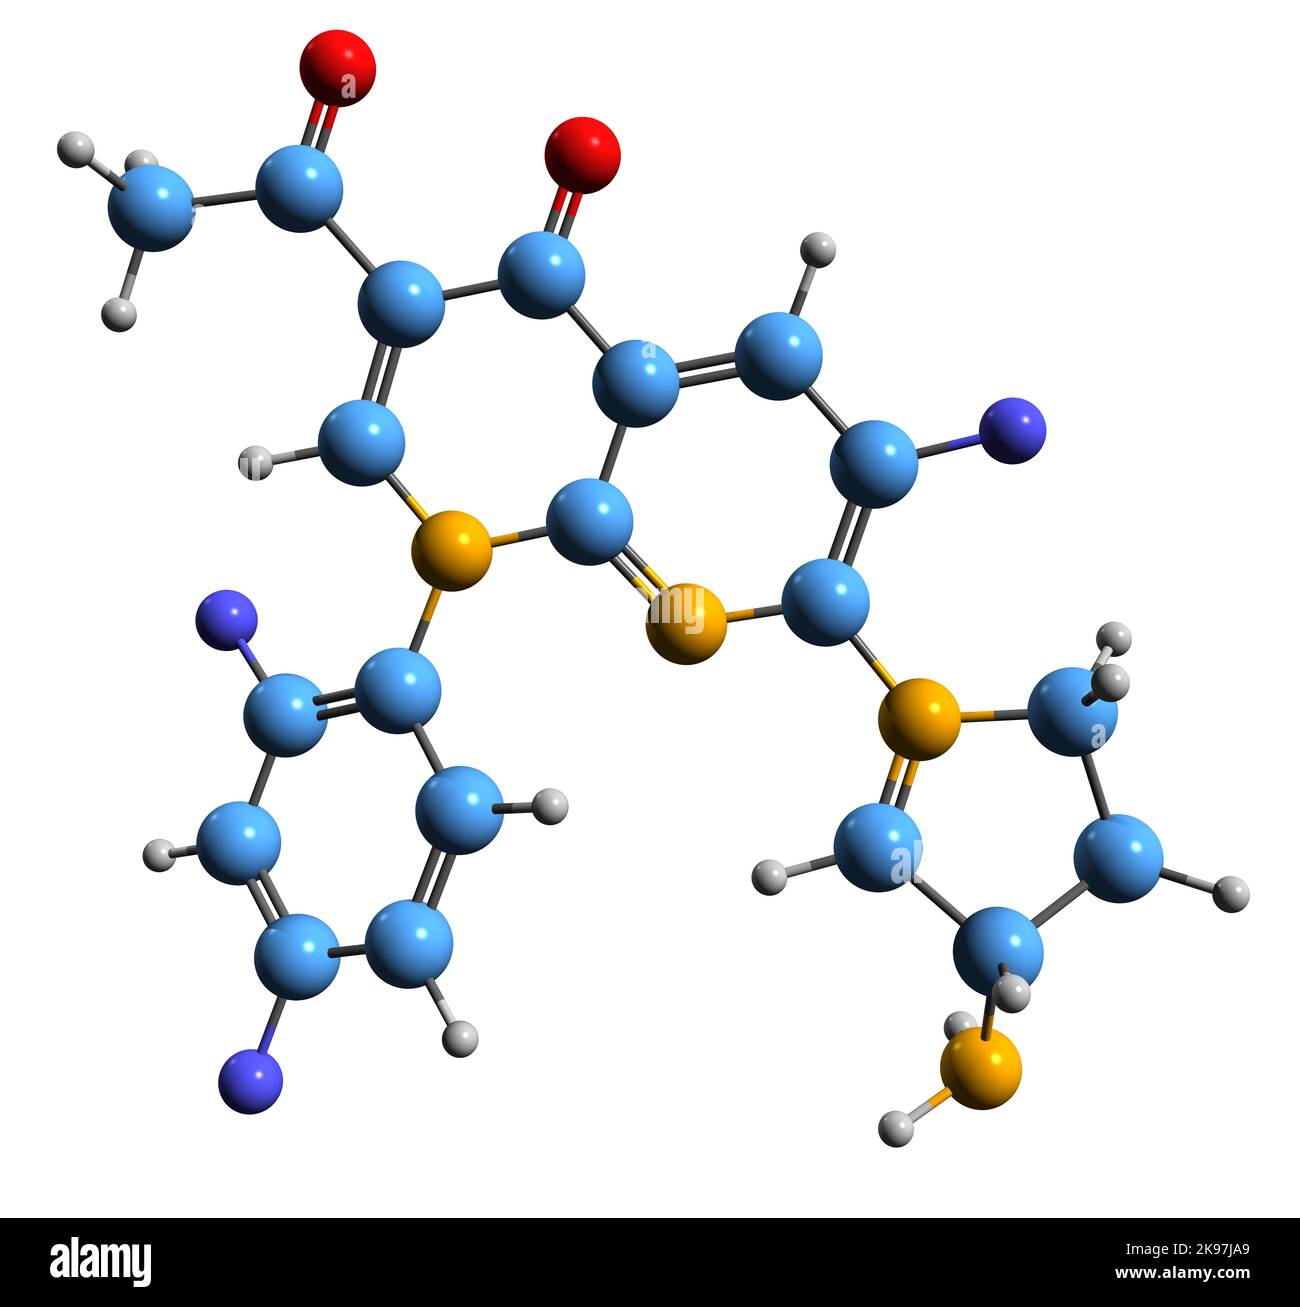 3D Bild der Skelettformel von Tosufloxacin - molekulare chemische Struktur des Fluorchinolon-Antibiotikums, isoliert auf weißem Hintergrund Stockfoto